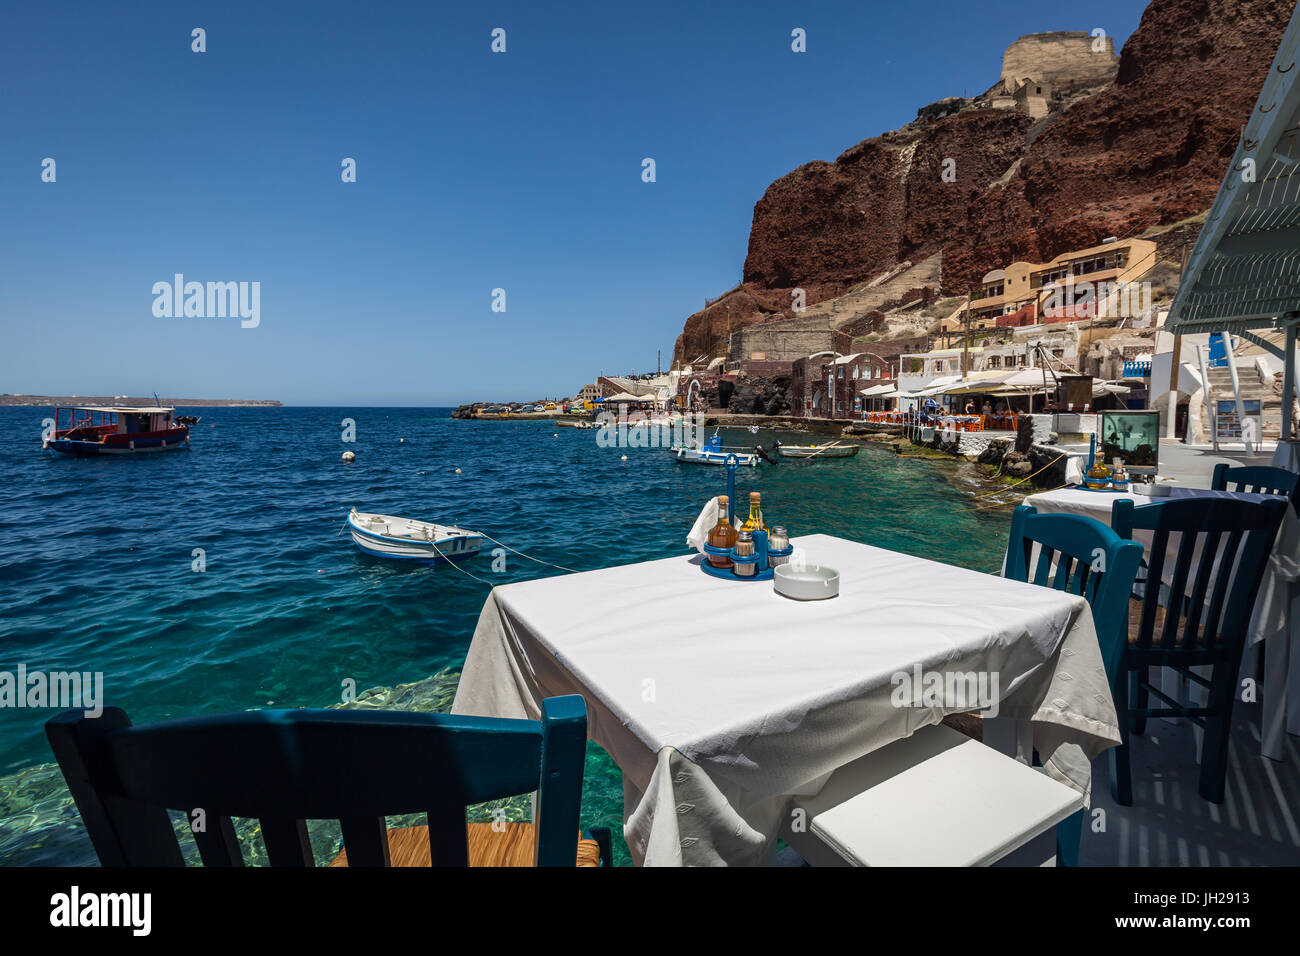 Une table avec vue sur l'un des restaurants de fruits de mer dans la baie d'Ammoudi ci-dessous, Oia, Santorin, Cyclades, îles grecques, Grèce Banque D'Images